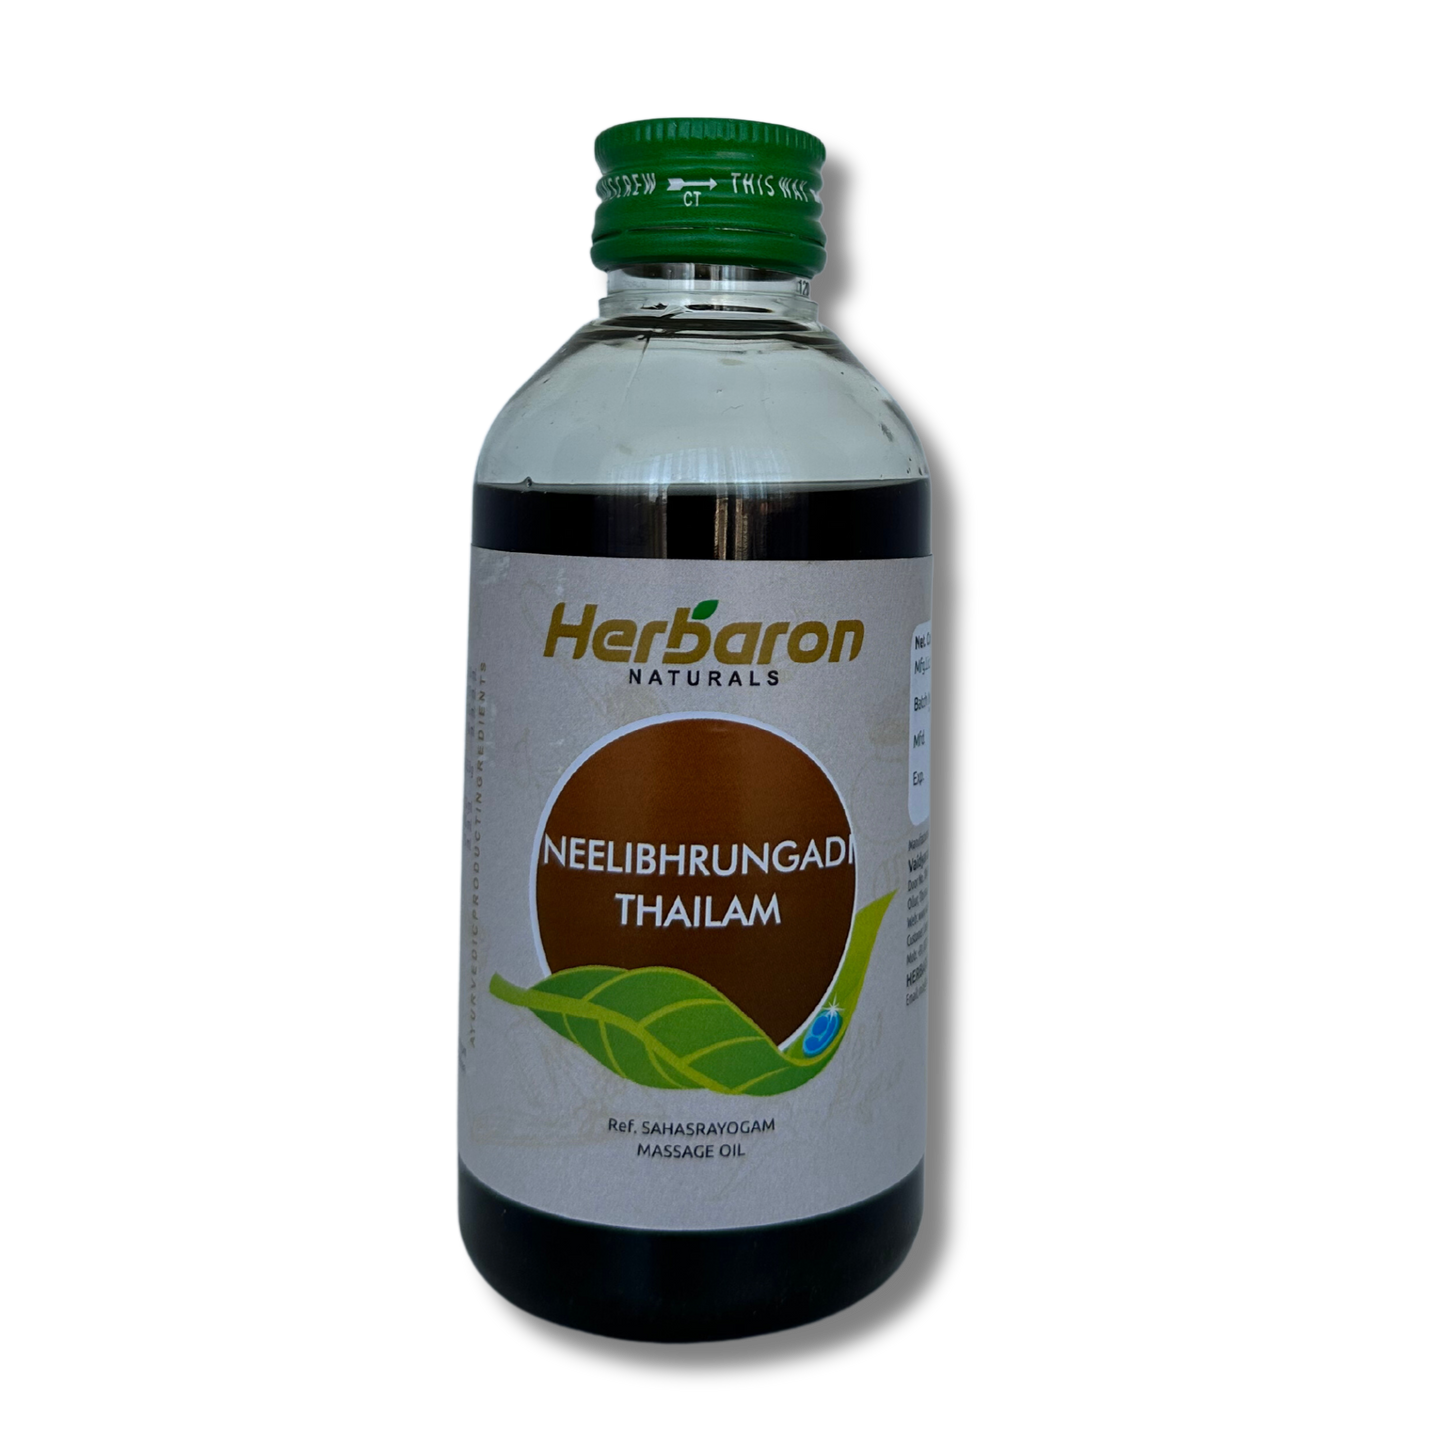 Herbaron Neelibhringadi Hair Oil